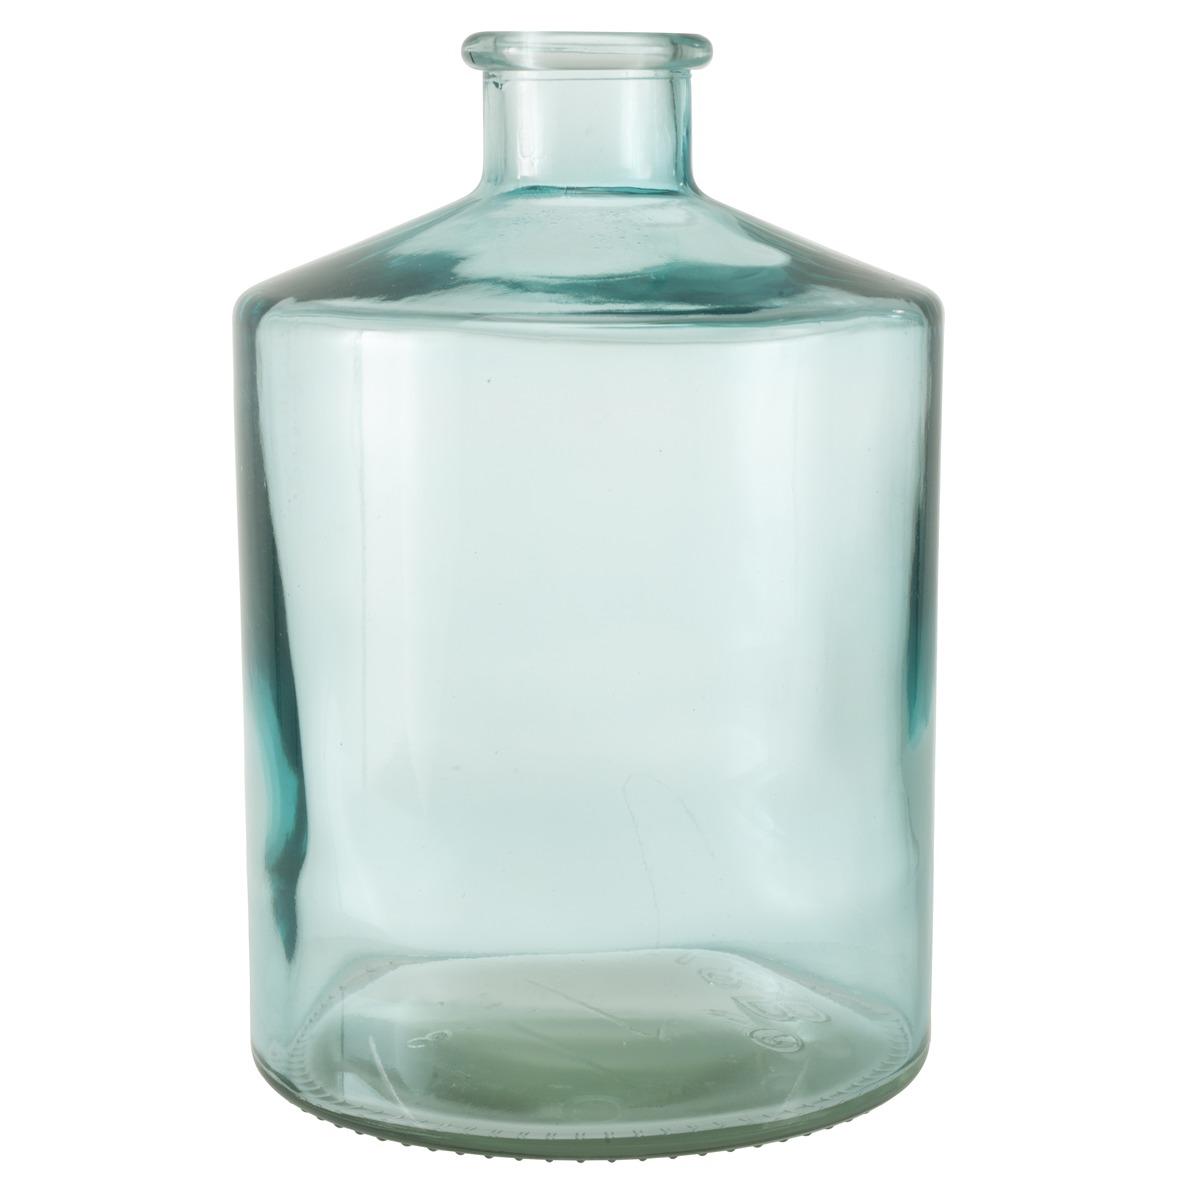 Vase en forme de jarre - 17 x 17 x H 26,5 cm - Bleu